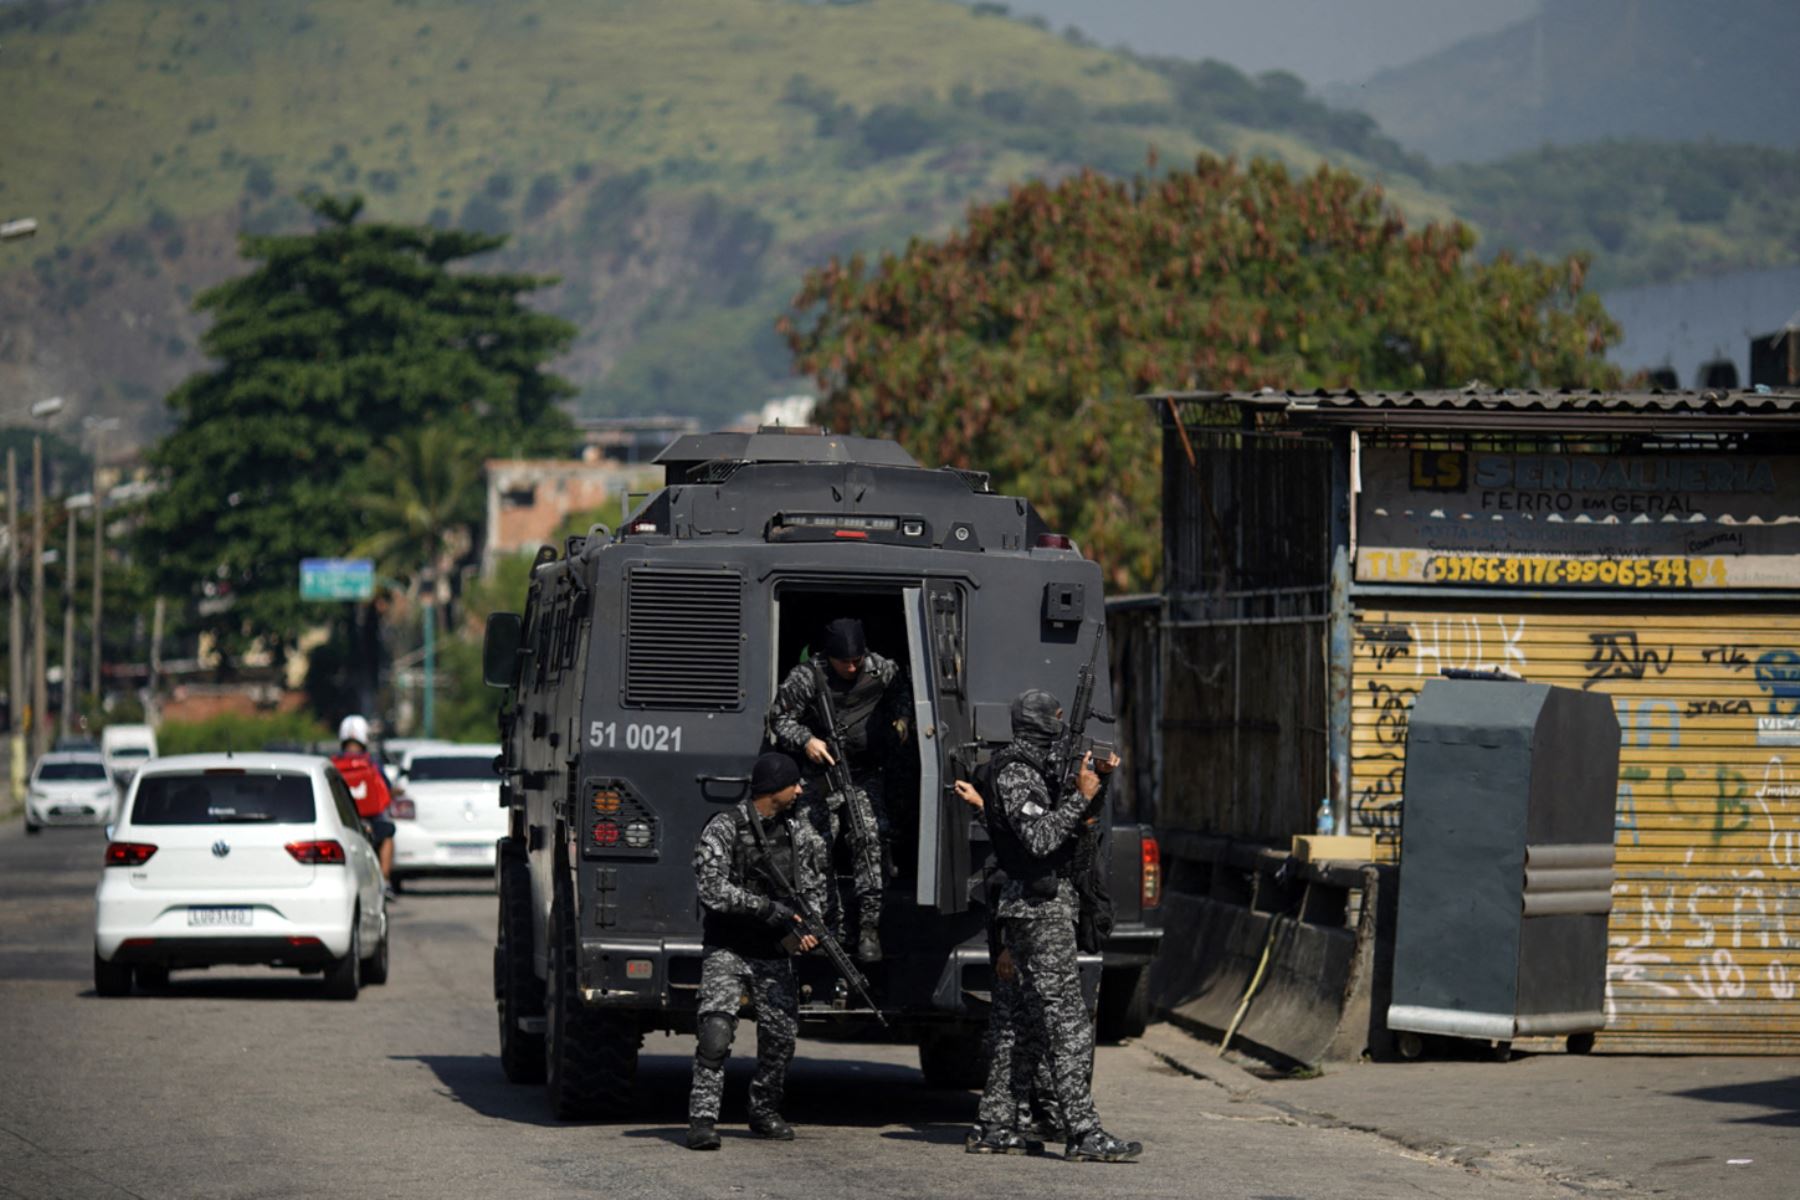 Agentes de la Policía Civil de Río son vistos durante un operativo policial contra narcotraficantes en la favela Jacarezinho en el estado de Río de Janeiro, Brasil, el 6 de mayo de 2021. Foto: AFP